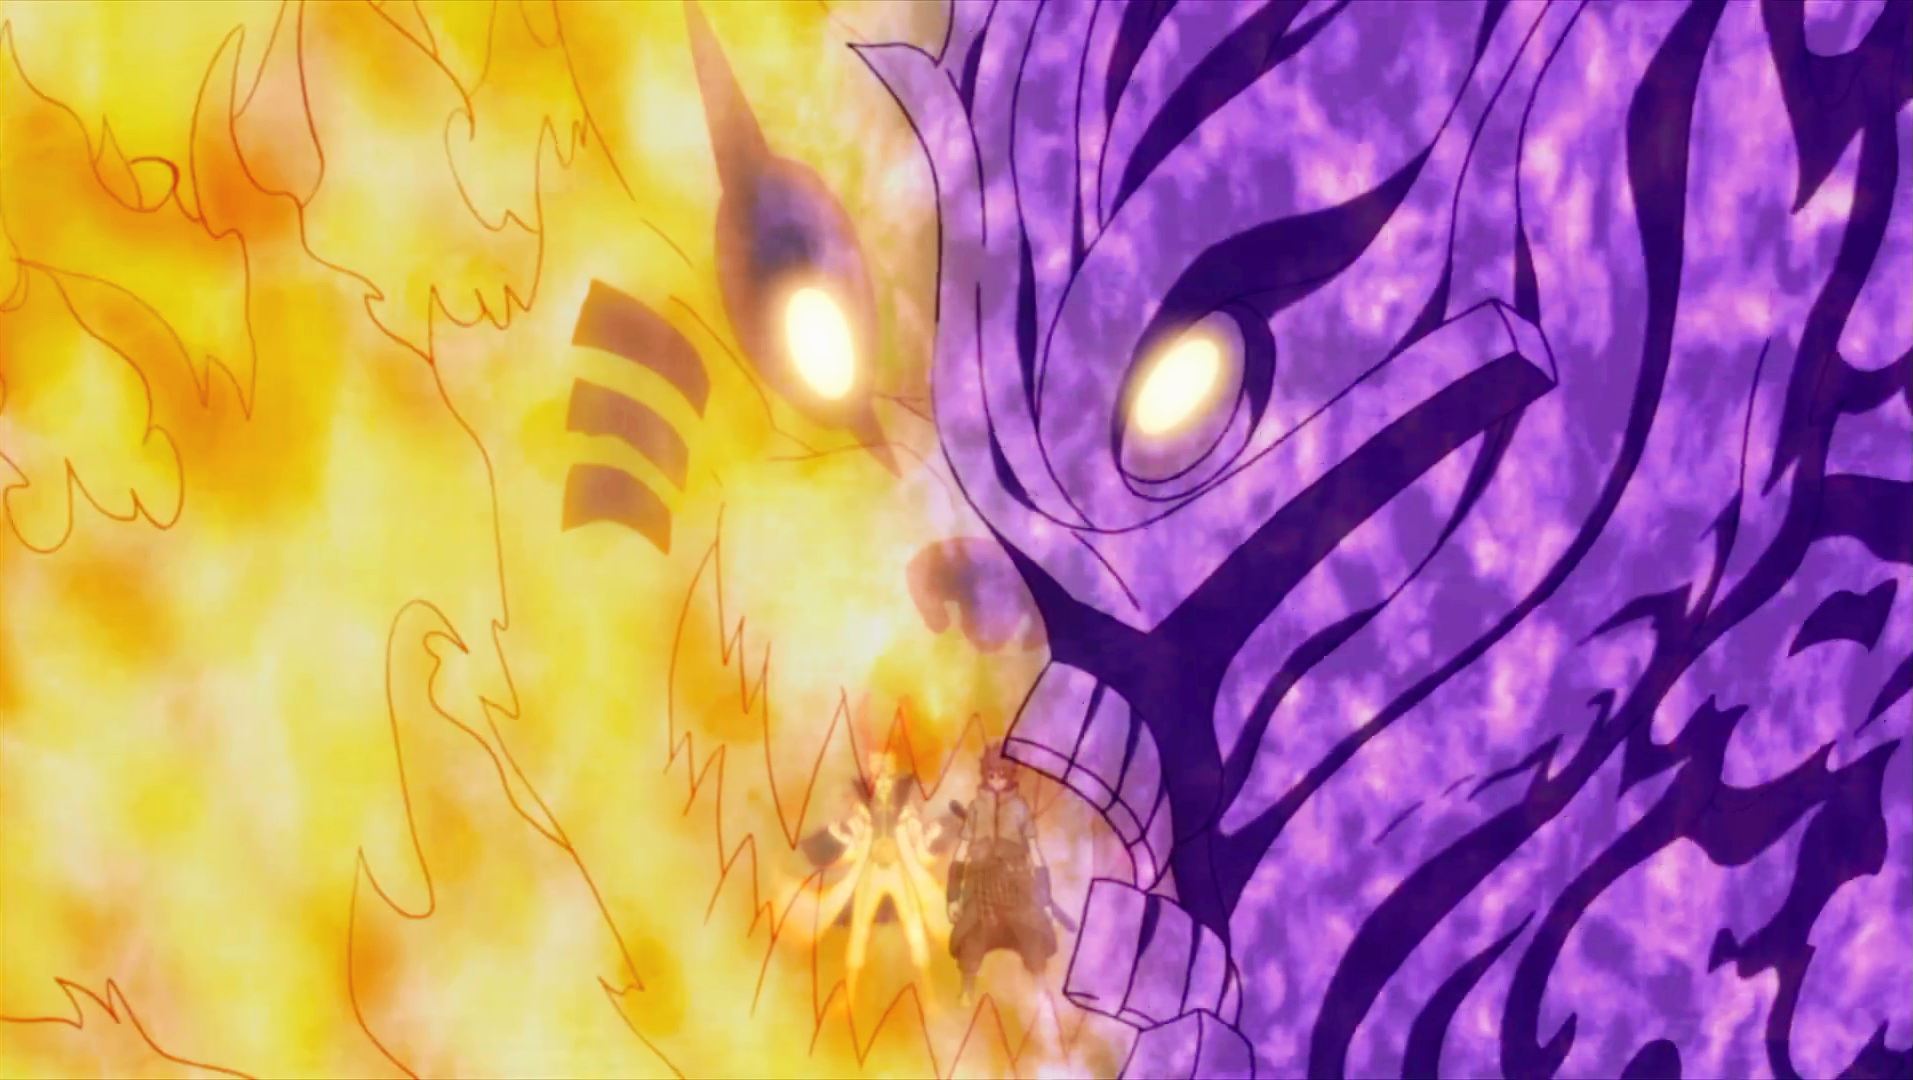 Naruto: r faz corte de 115 horas no anime para remover fillers